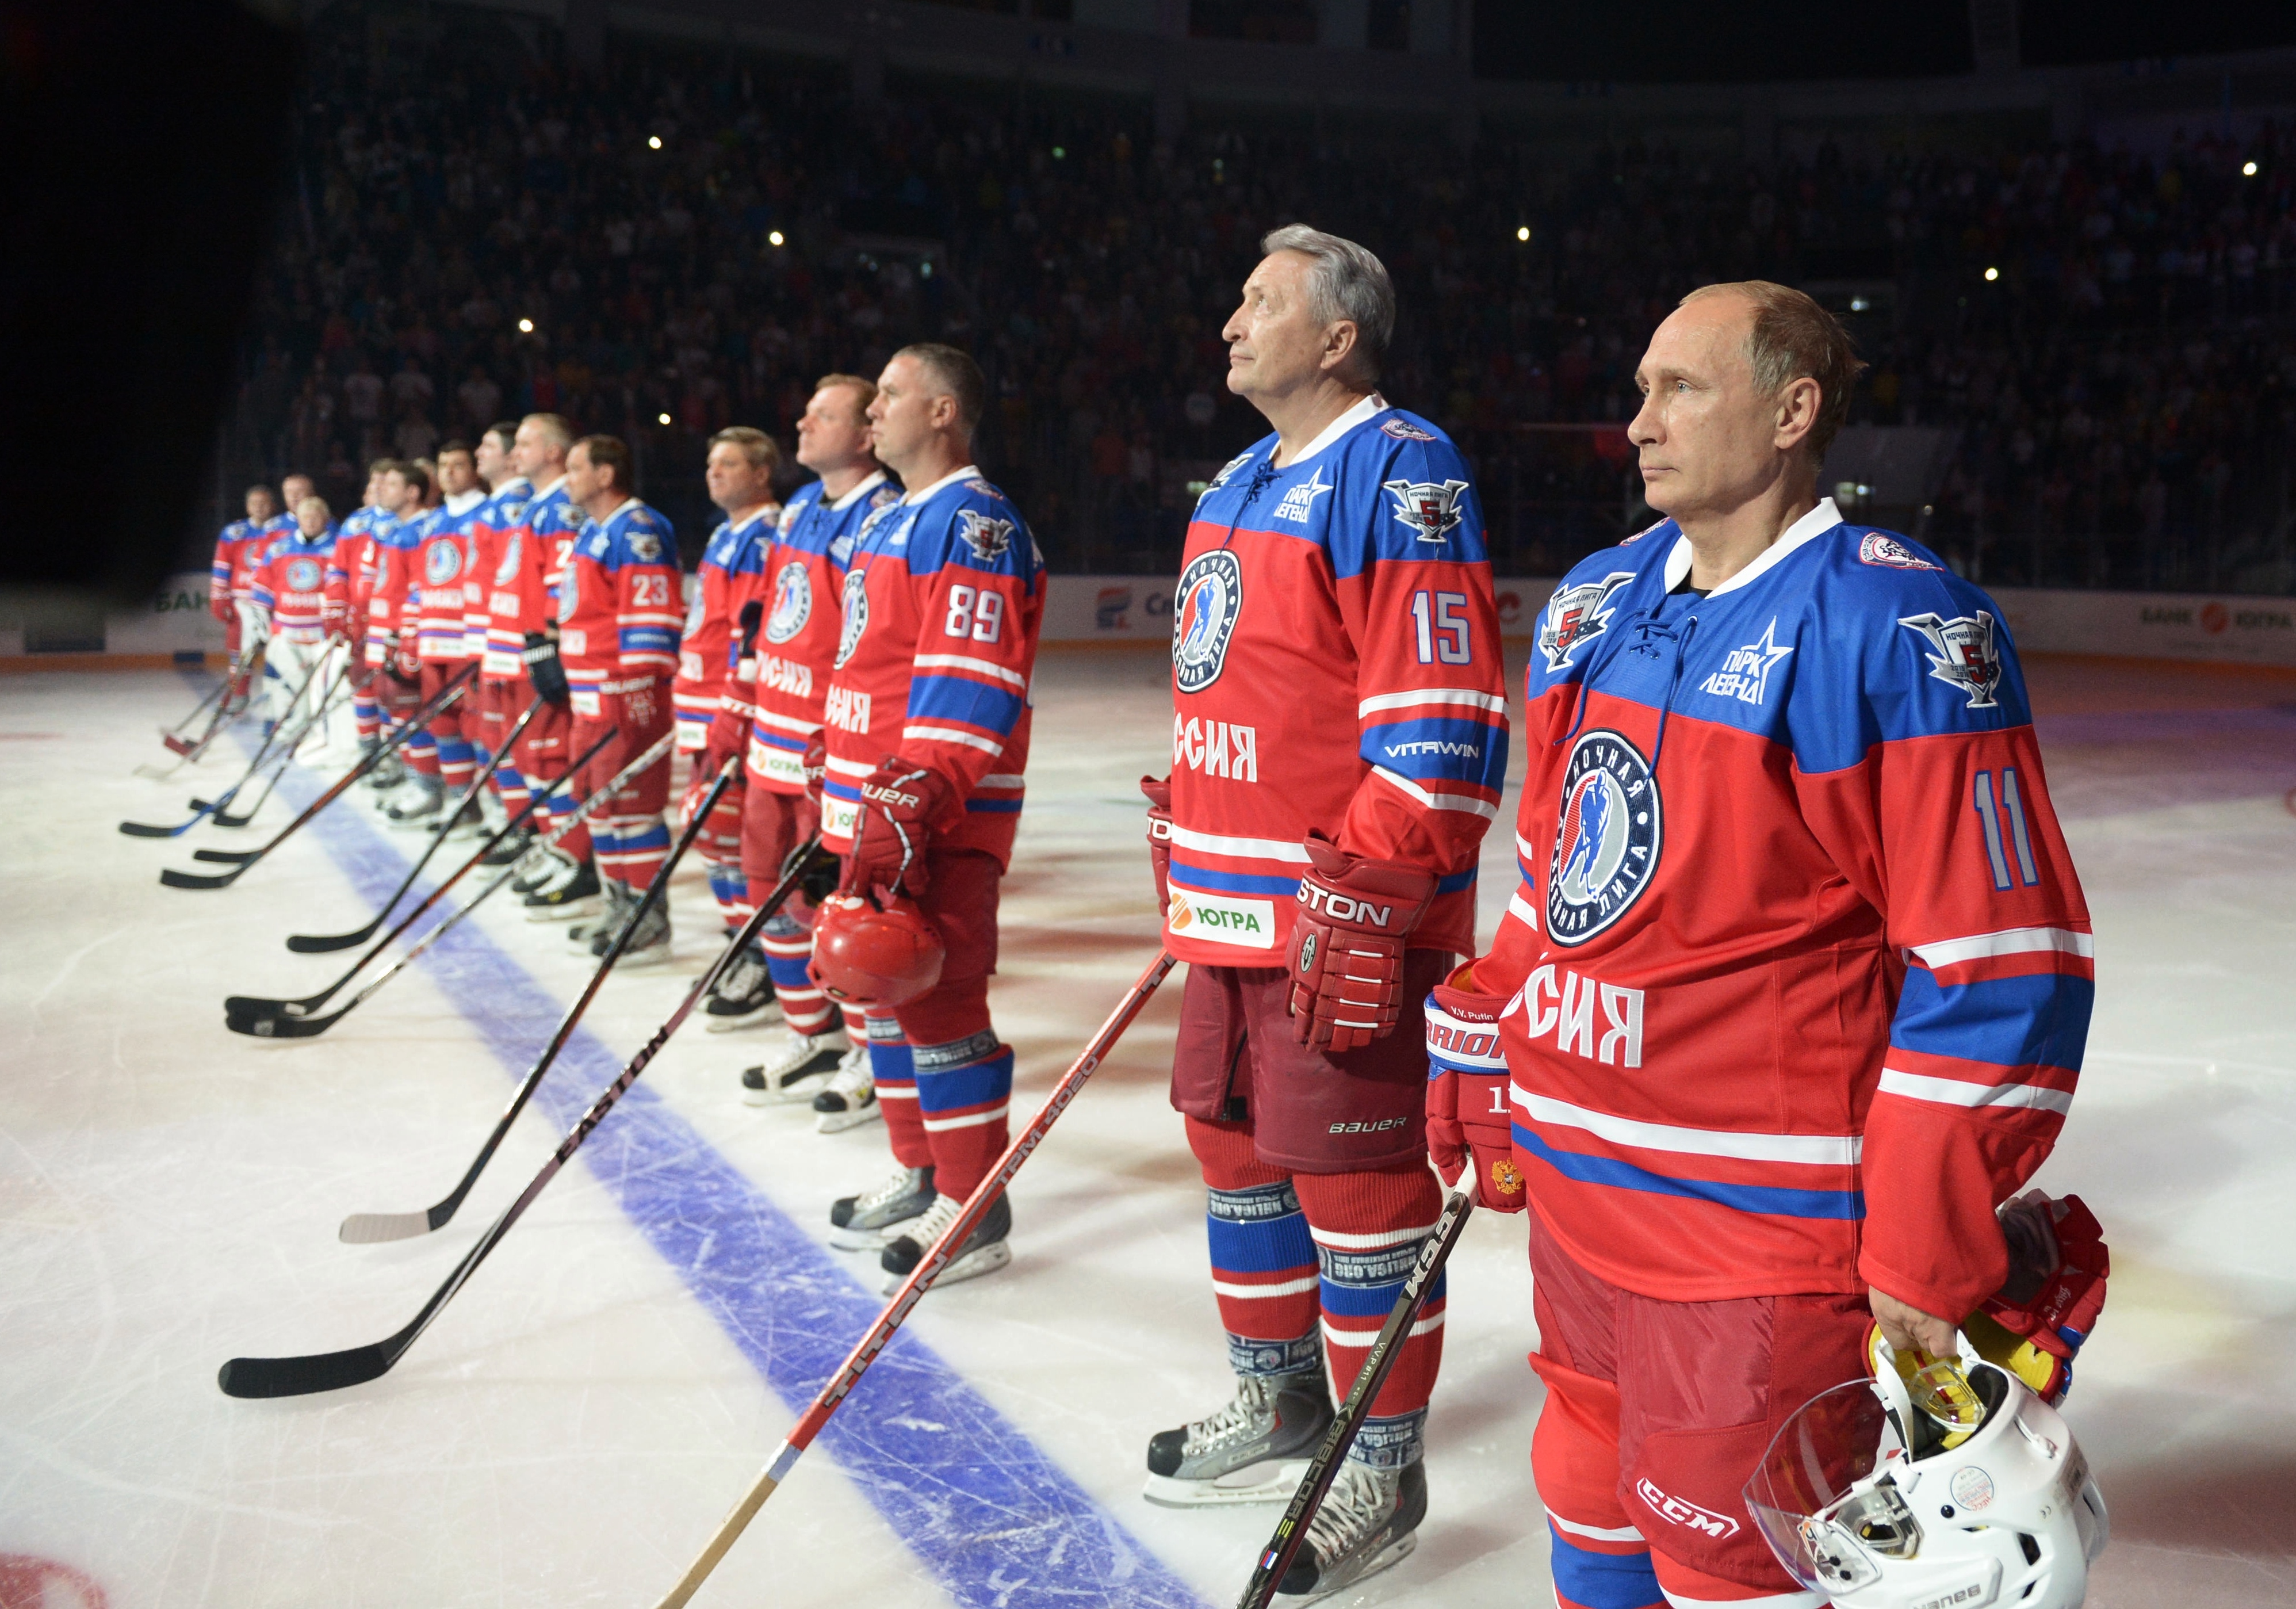 O presidente russo Vladimir Putin festejou os seus 63 anos em um jogo de hóquei, na abertura oficial do campeonato nacional em Sochi (7/10/2015).